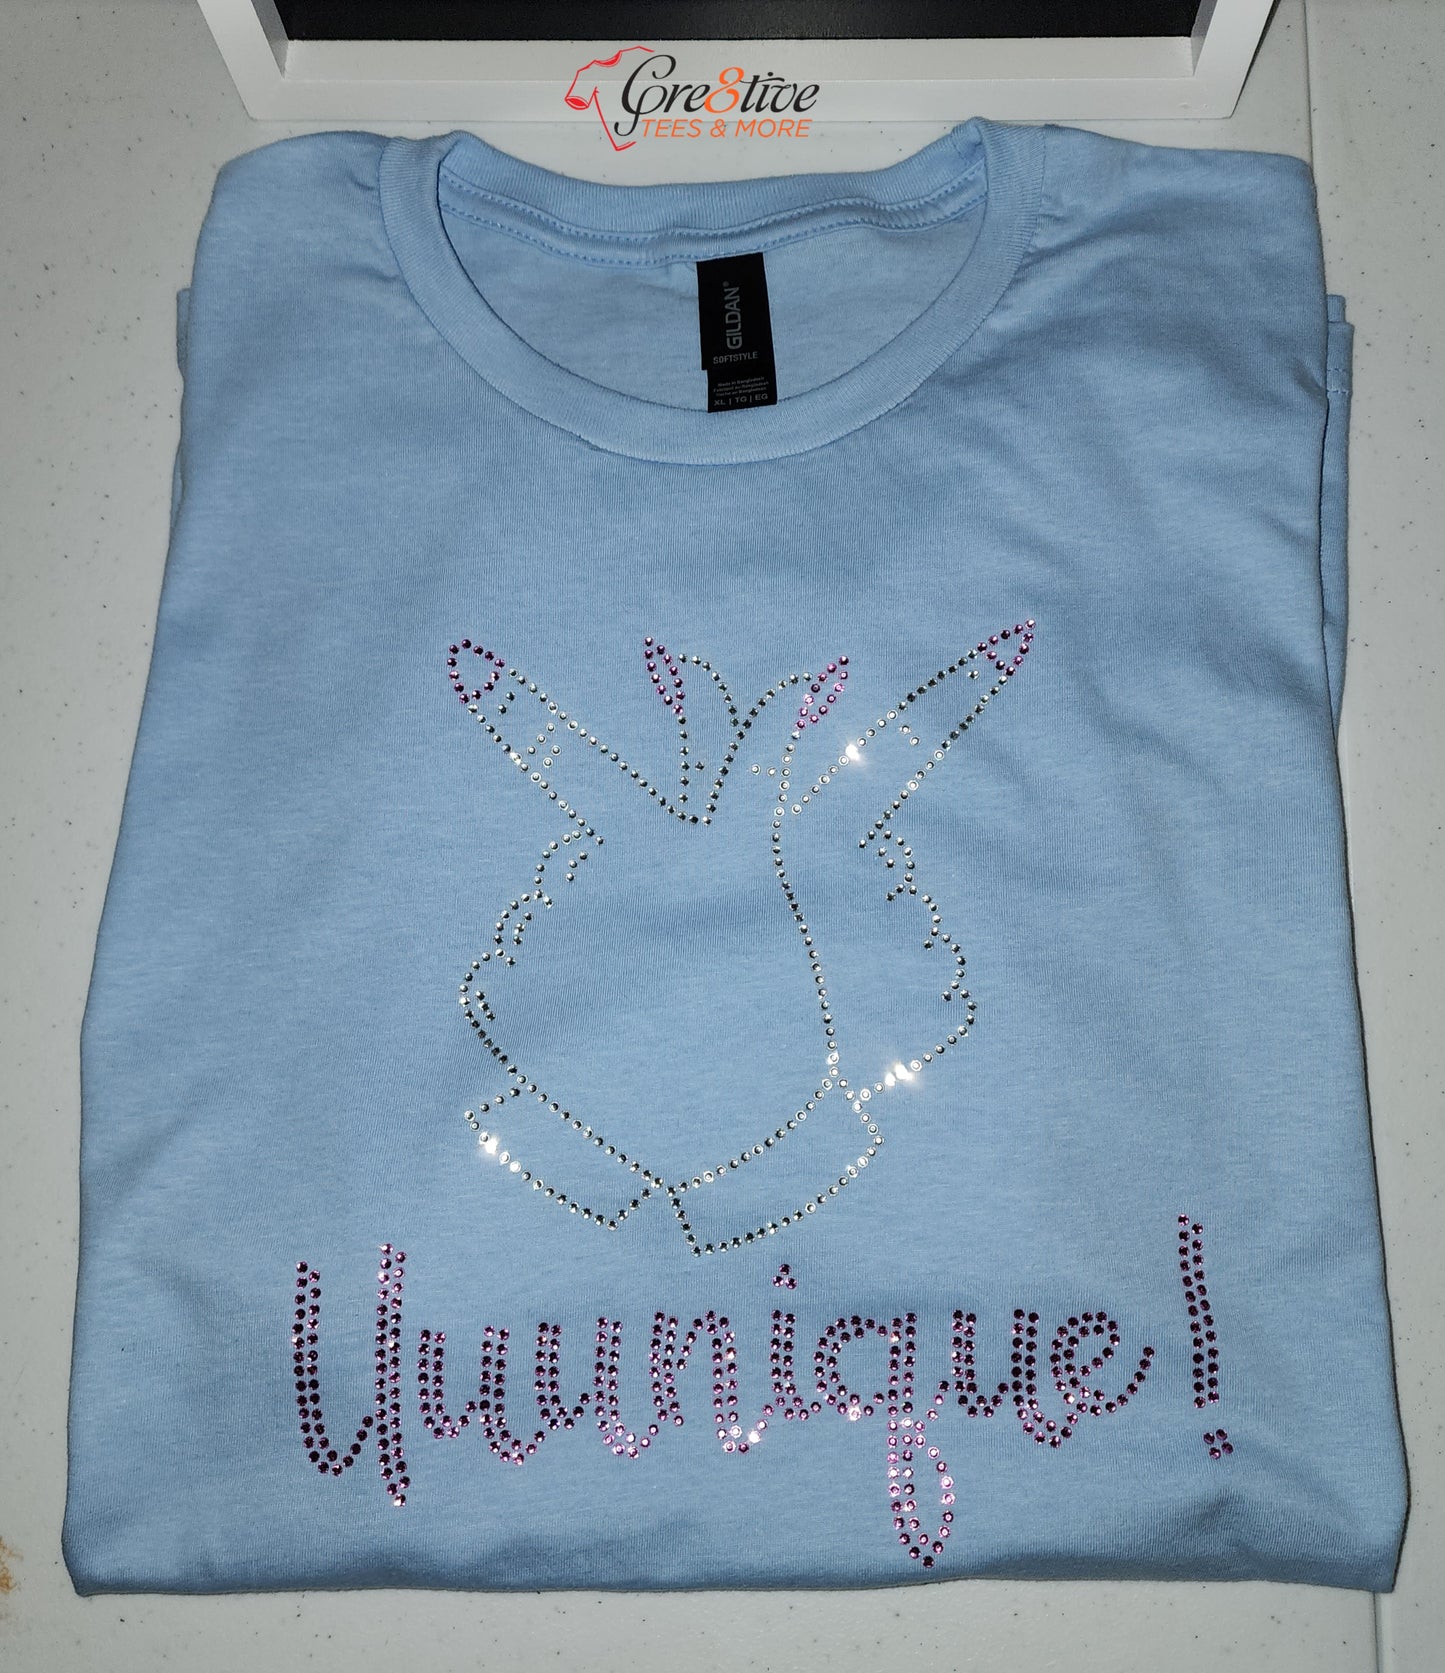 Uuunique Bling Shirt